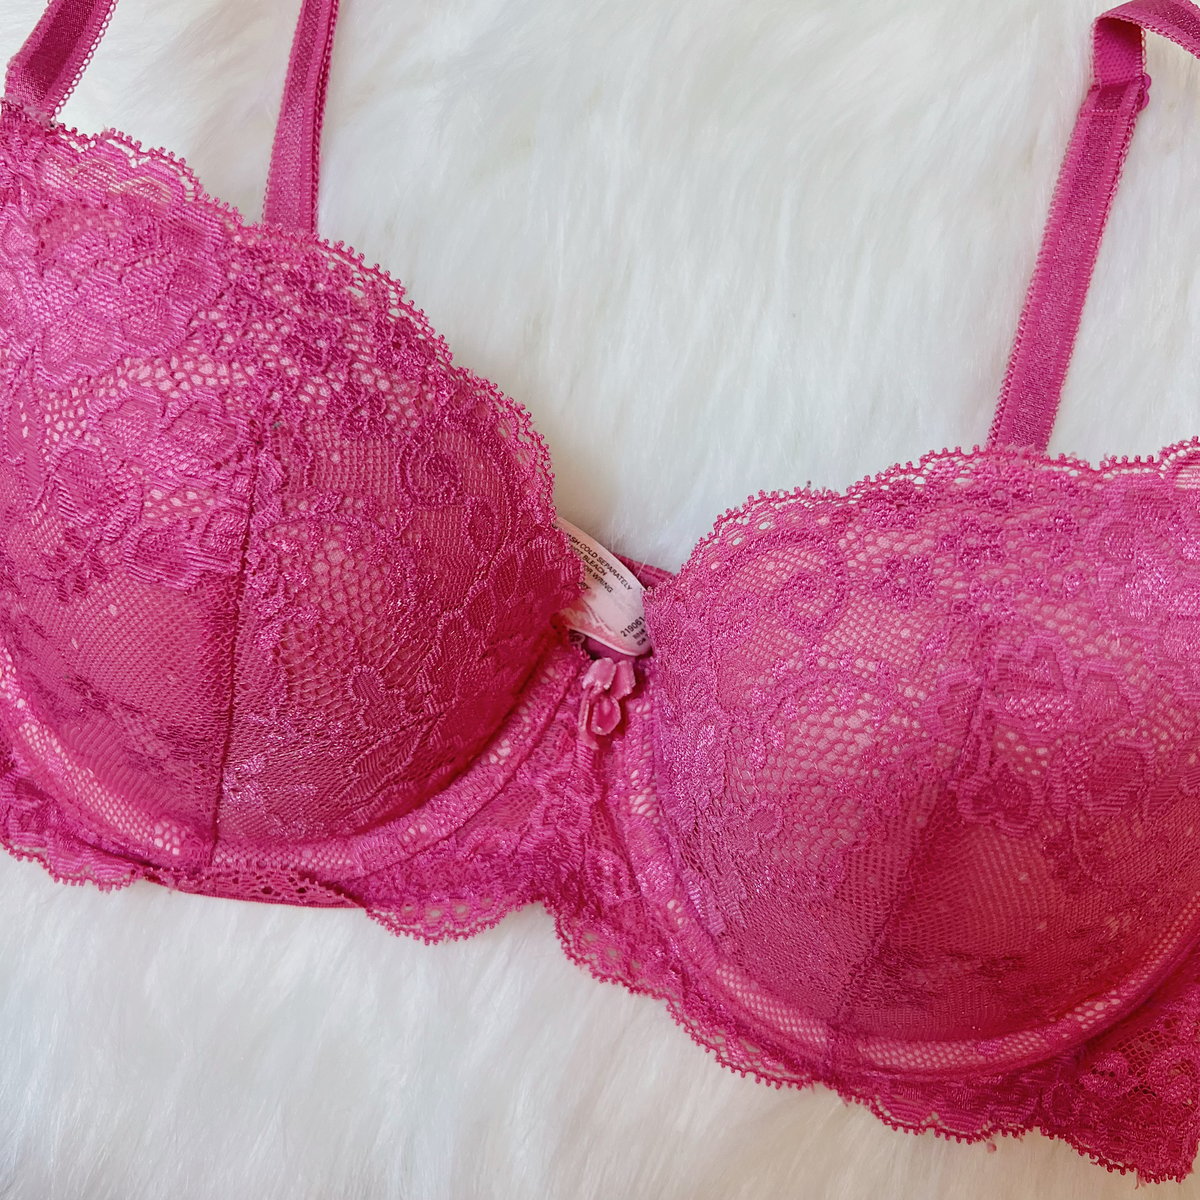 Dark pink Victoria's Secret bra 32D